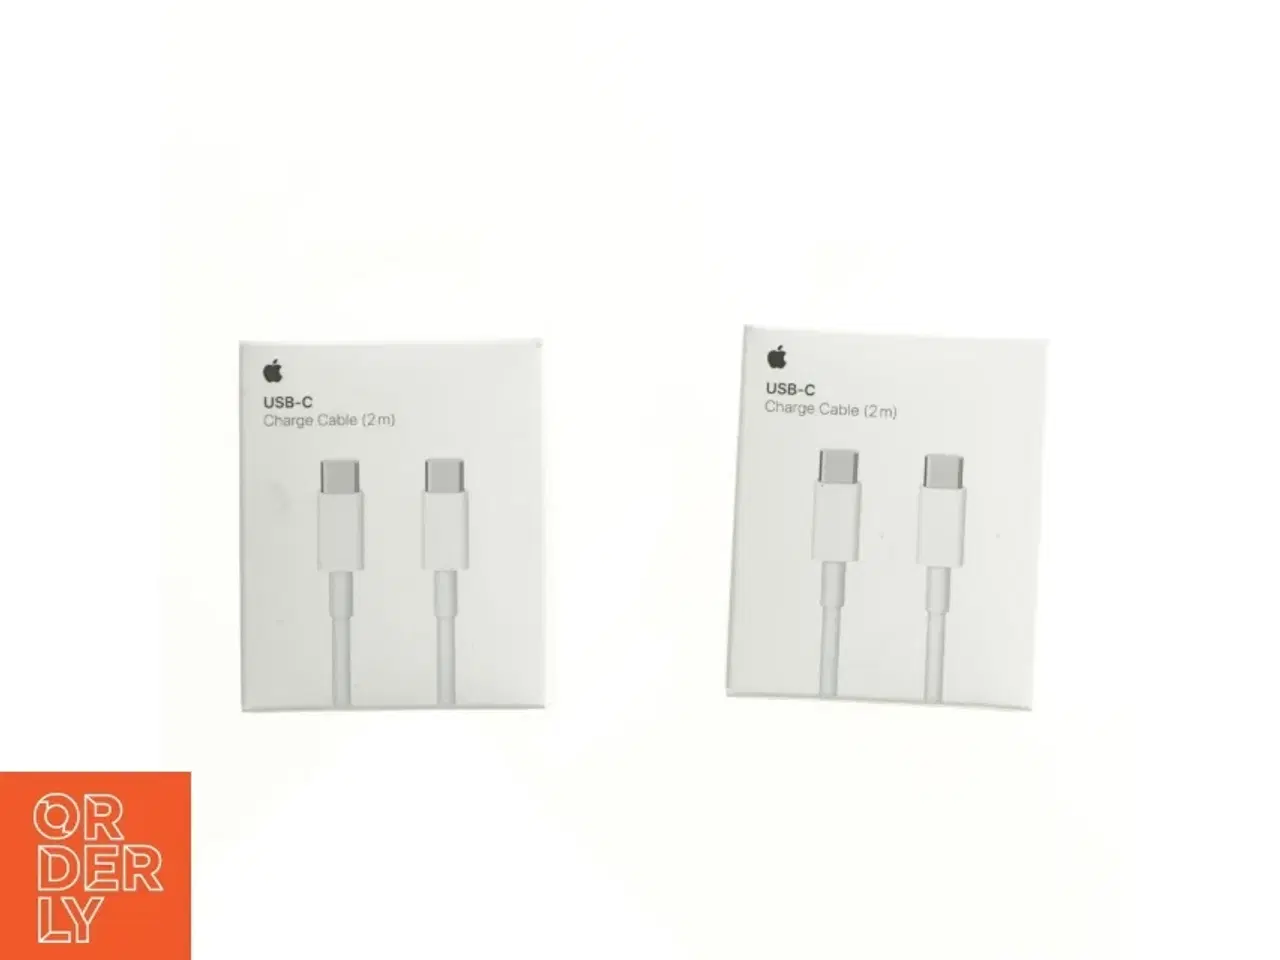 Billede 1 - USB-C opladningskabel fra Apple (str. 9 x 7 x 3 cm)